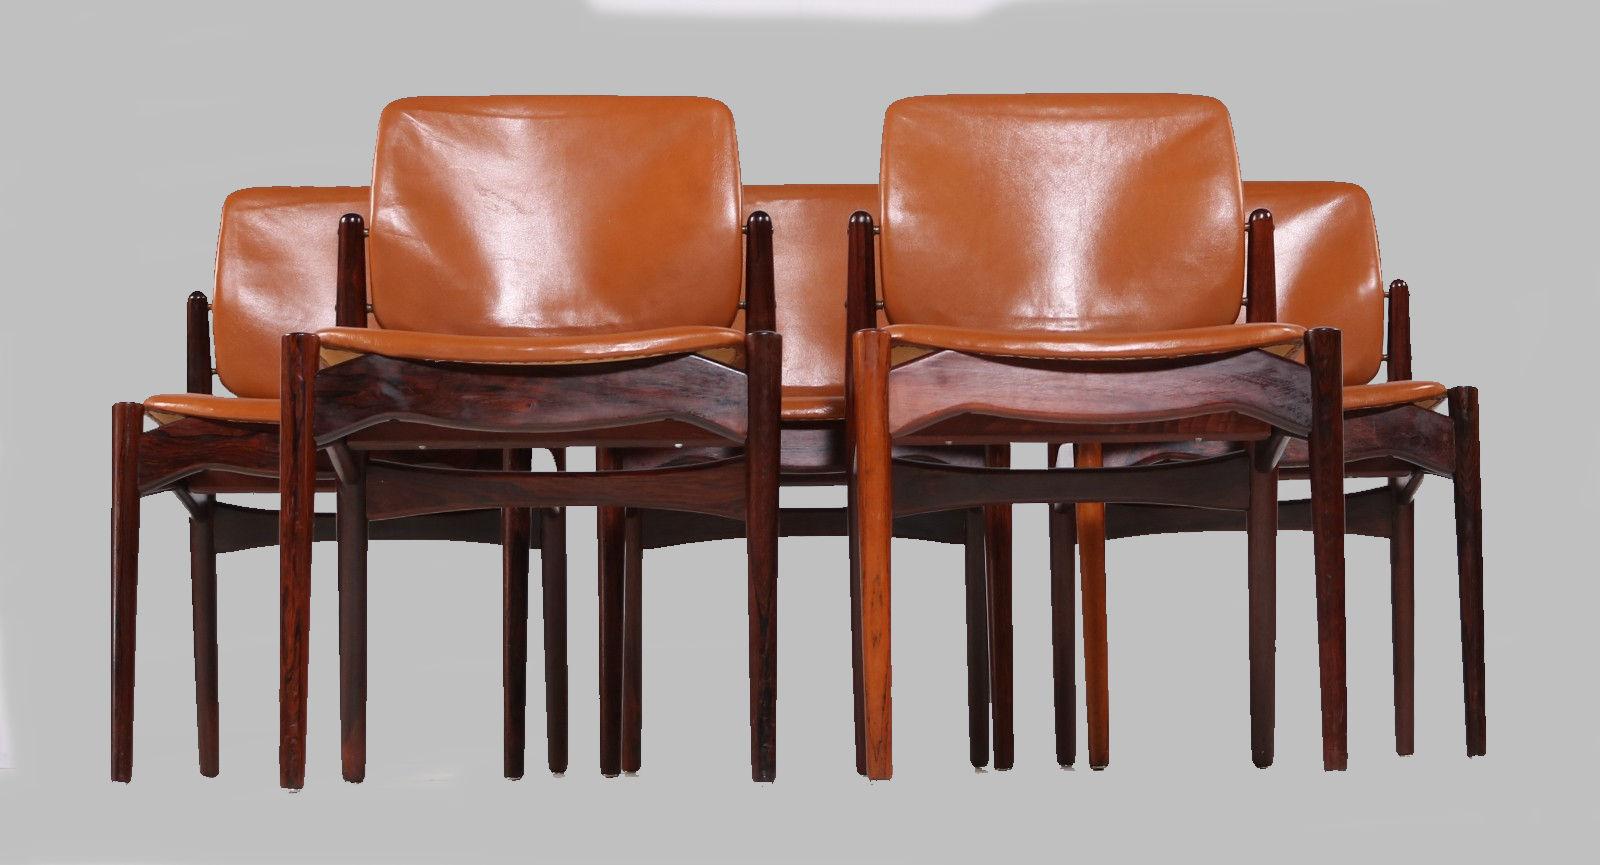 Ensemble de 5 chaises de salle à manger danoises en palissandre conçues par Erik Buch et produites par Ørun Møbler dans les années 1960

Ce modèle, souvent appelé 